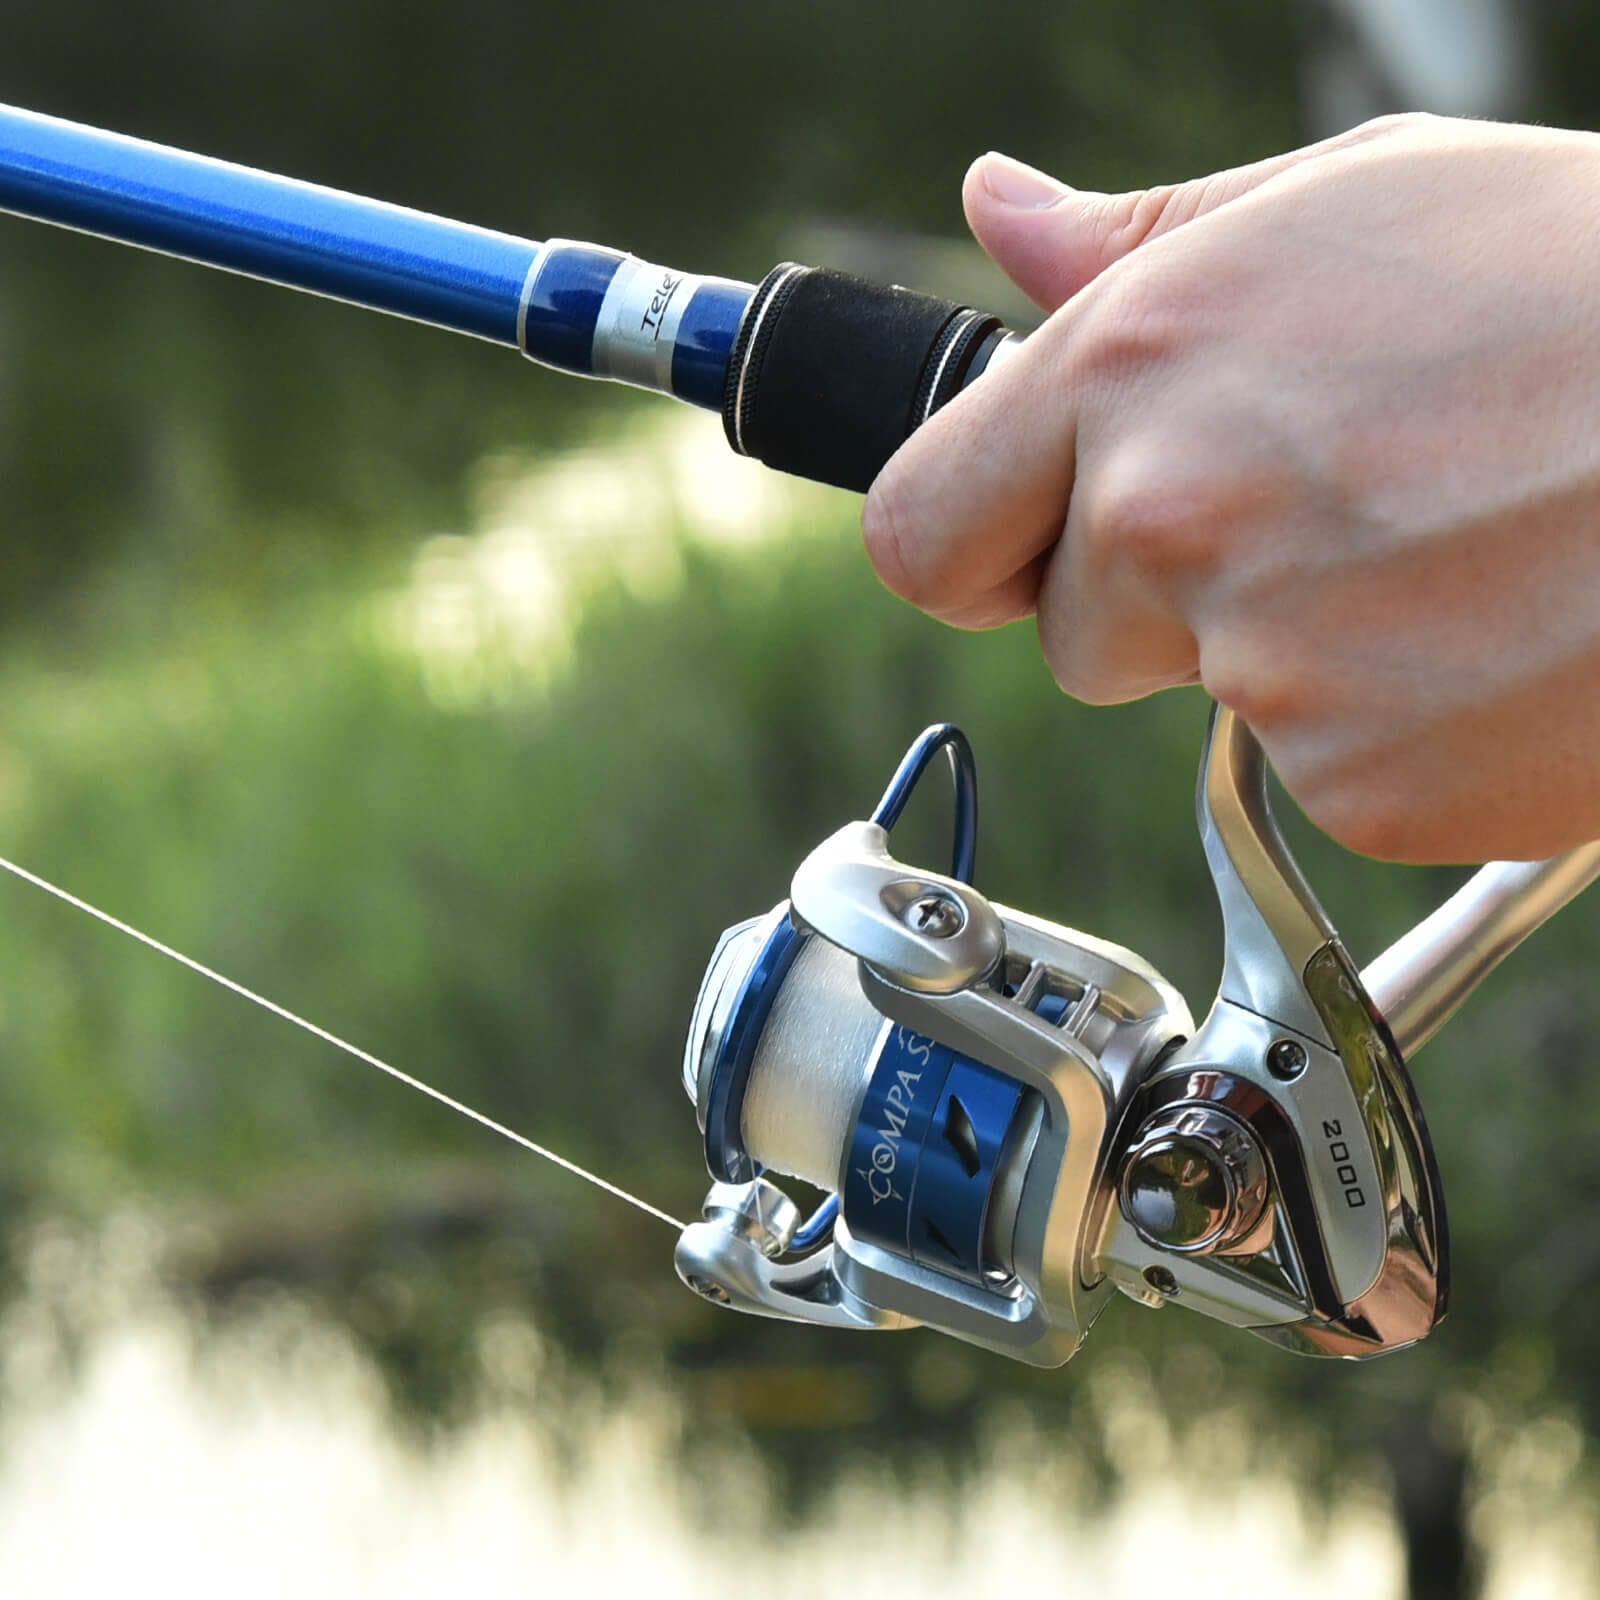 Fiberglass Fishing Rod, Fishing Kit, Retractable Portable Fishing